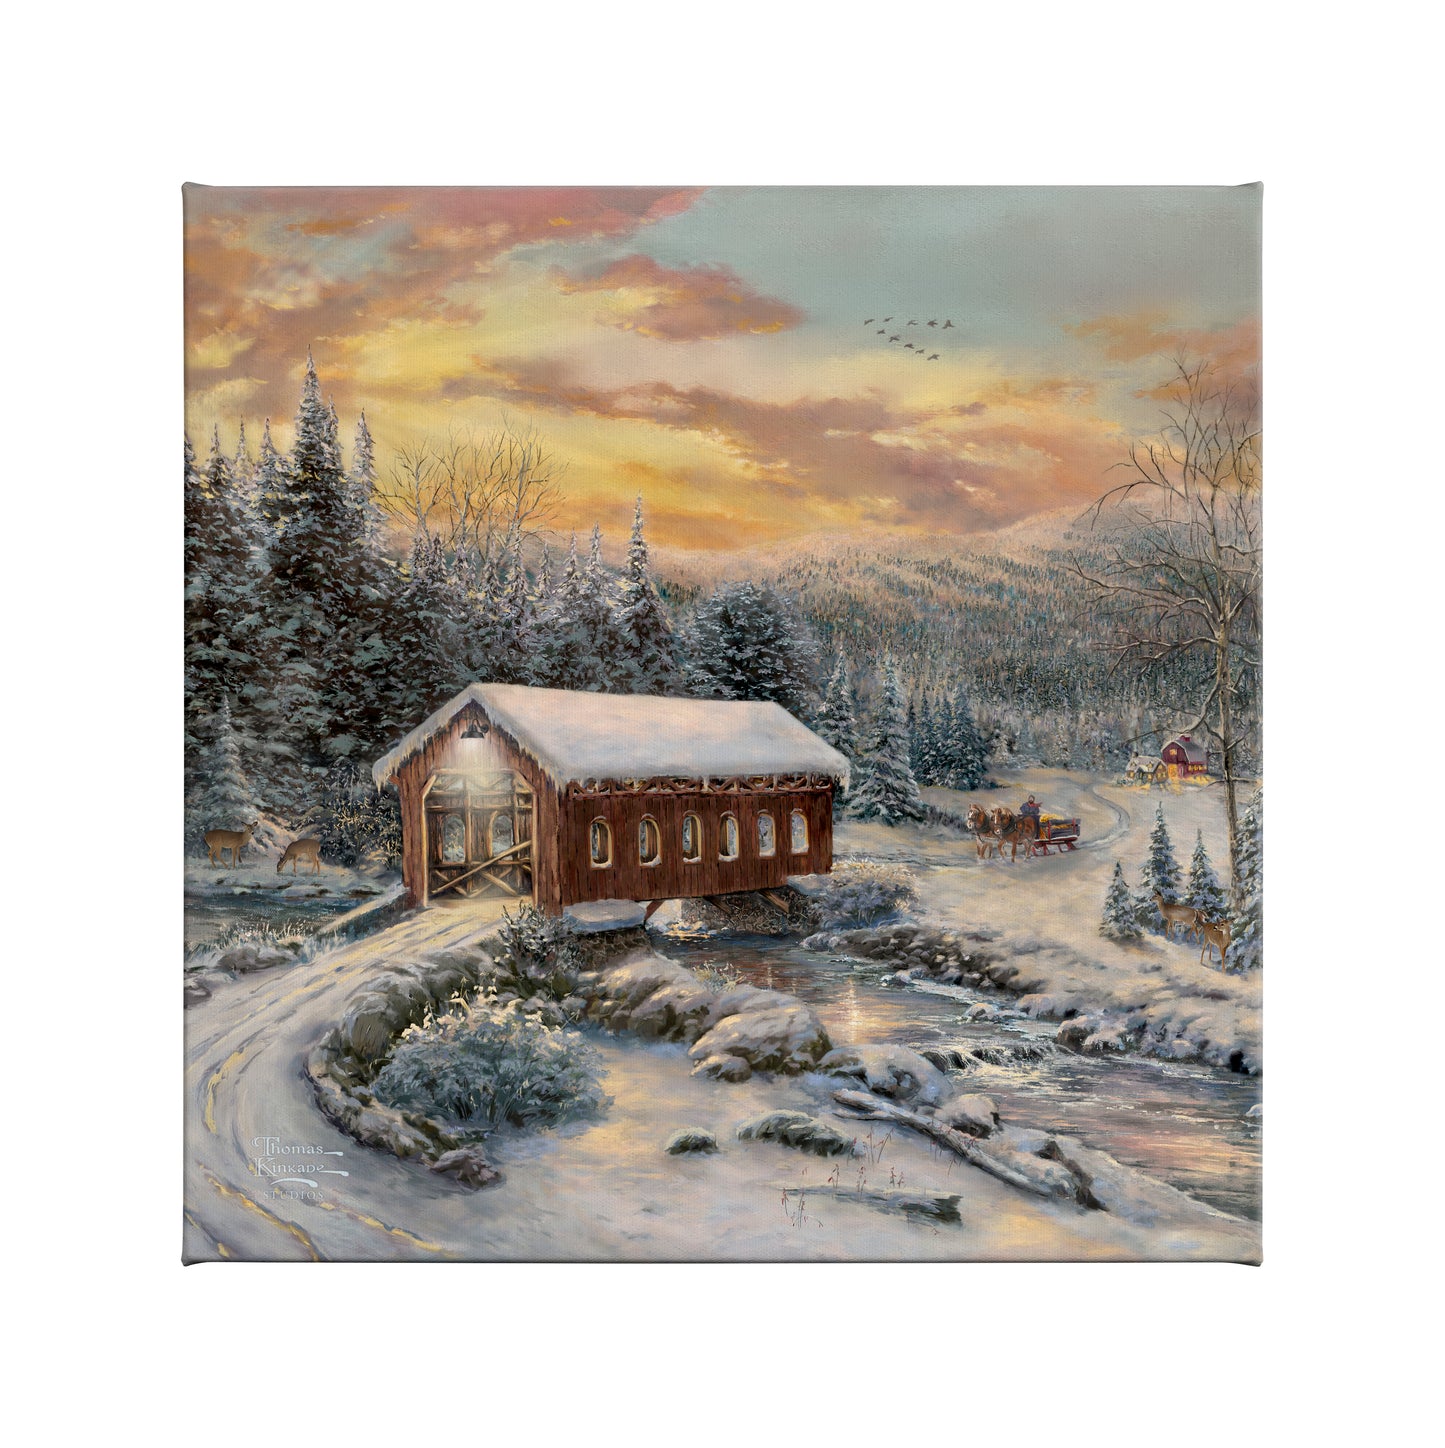 161558_CGW A Winter's Calm 14X14 Gallery Wrap Canvas_Mocked_F.jpg